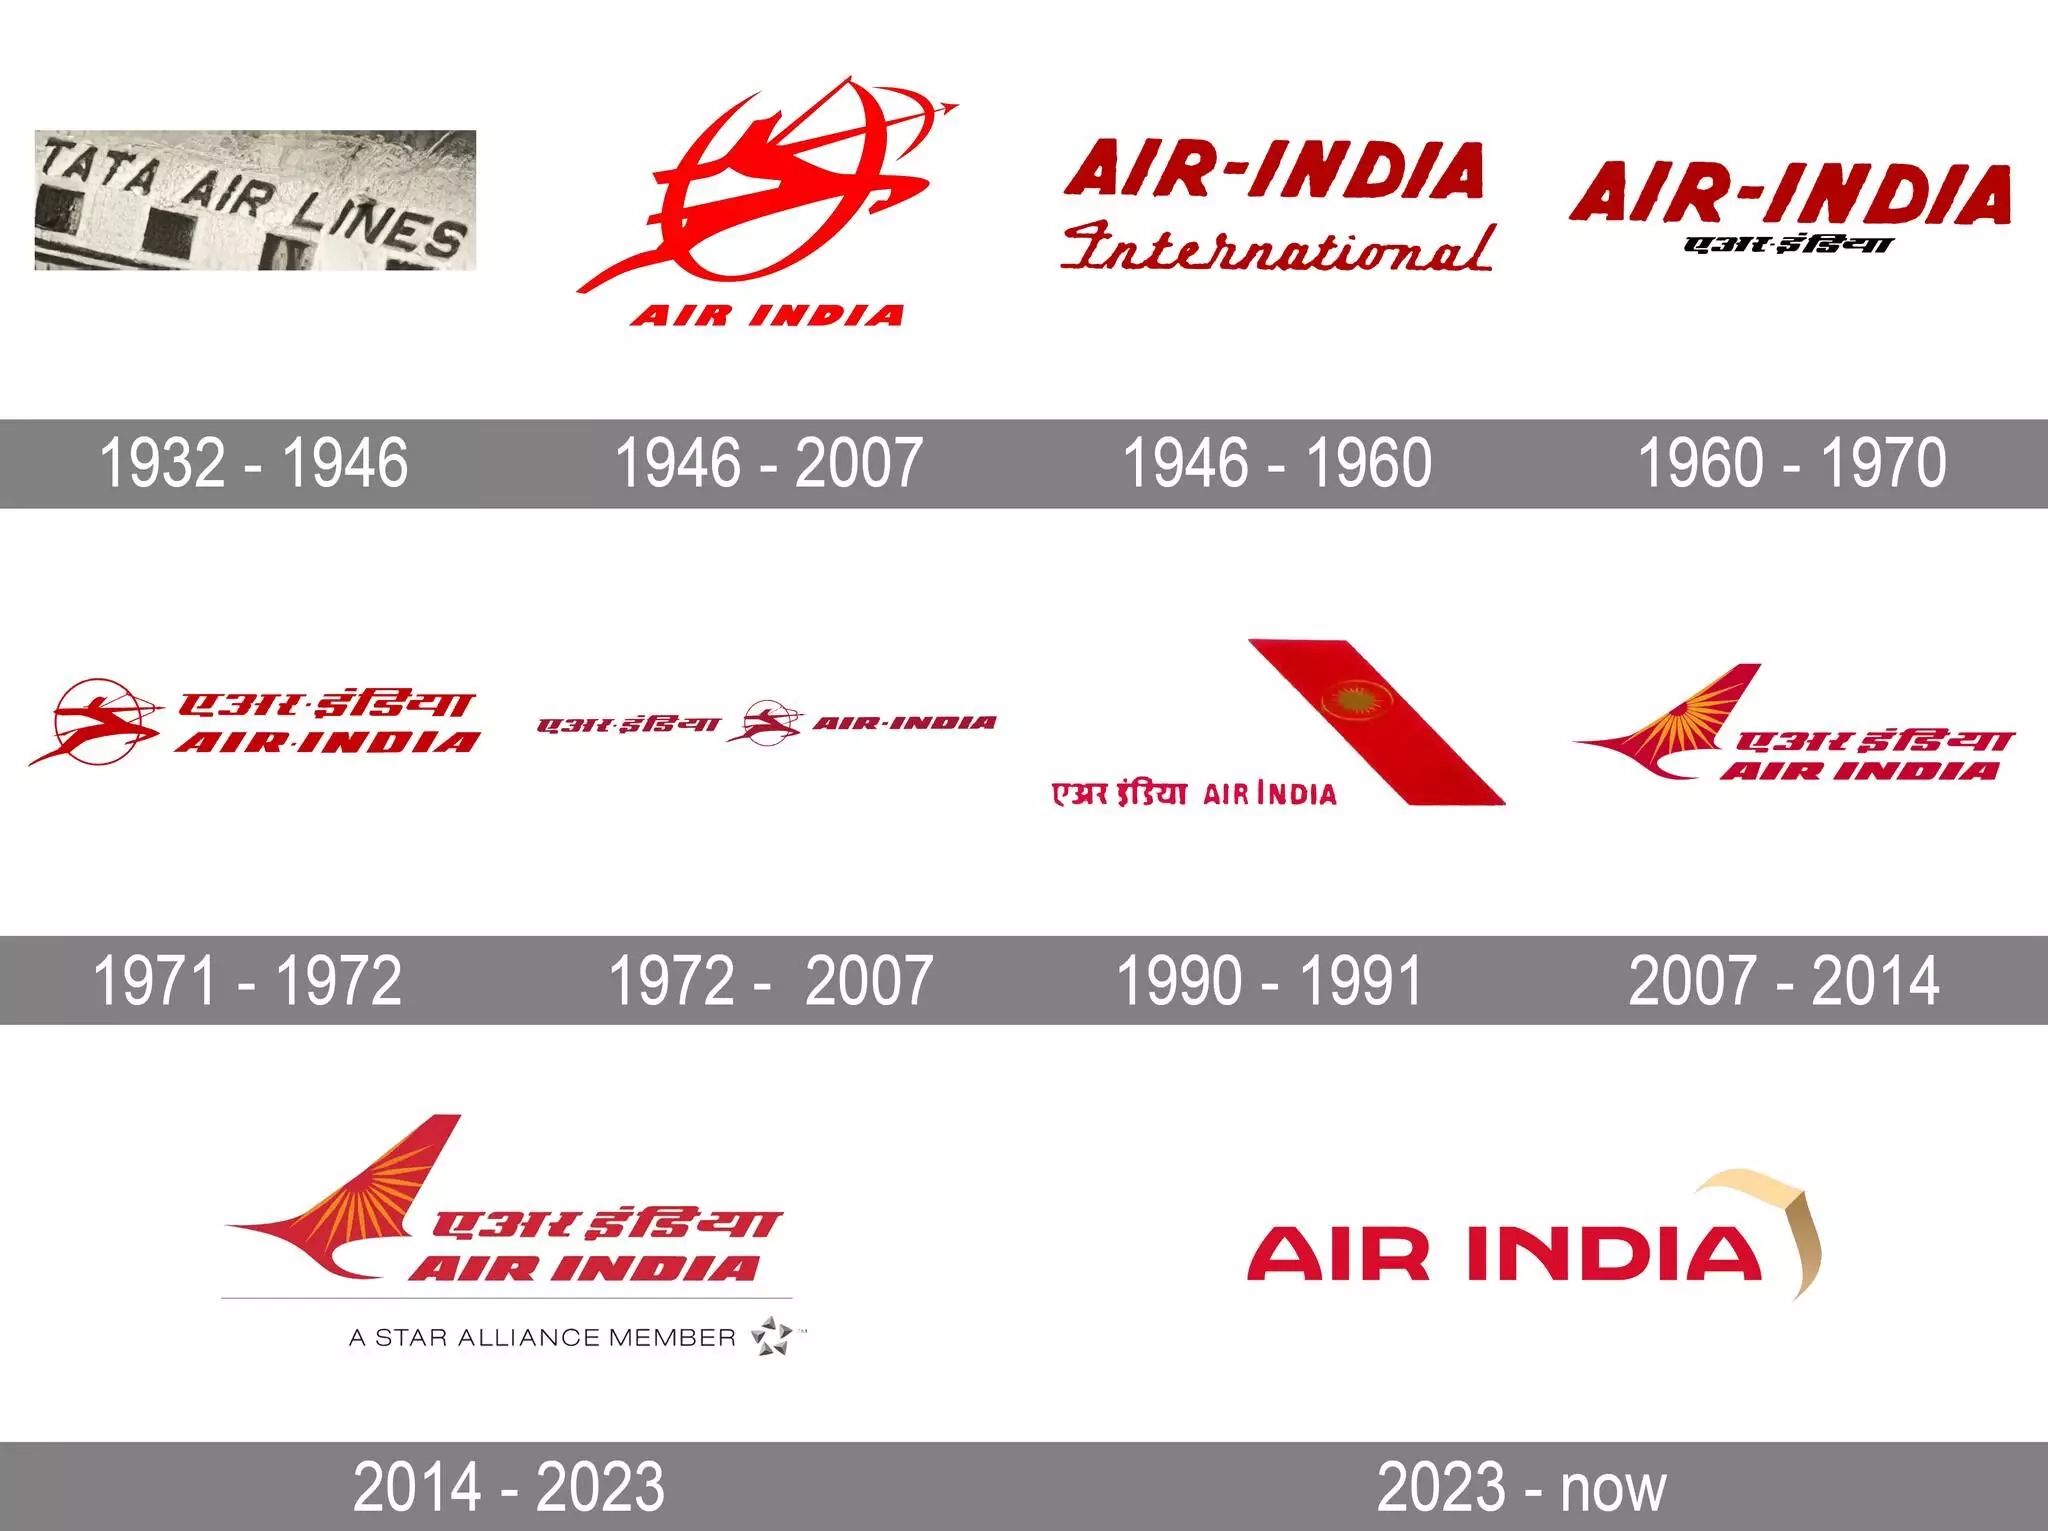 एयर इंडिया की ब्रांडिंग और ब्रिटिश एयरवेज तथा साउथवेस्ट एयरलाइंस के टक्कर में लाने की कोशिश